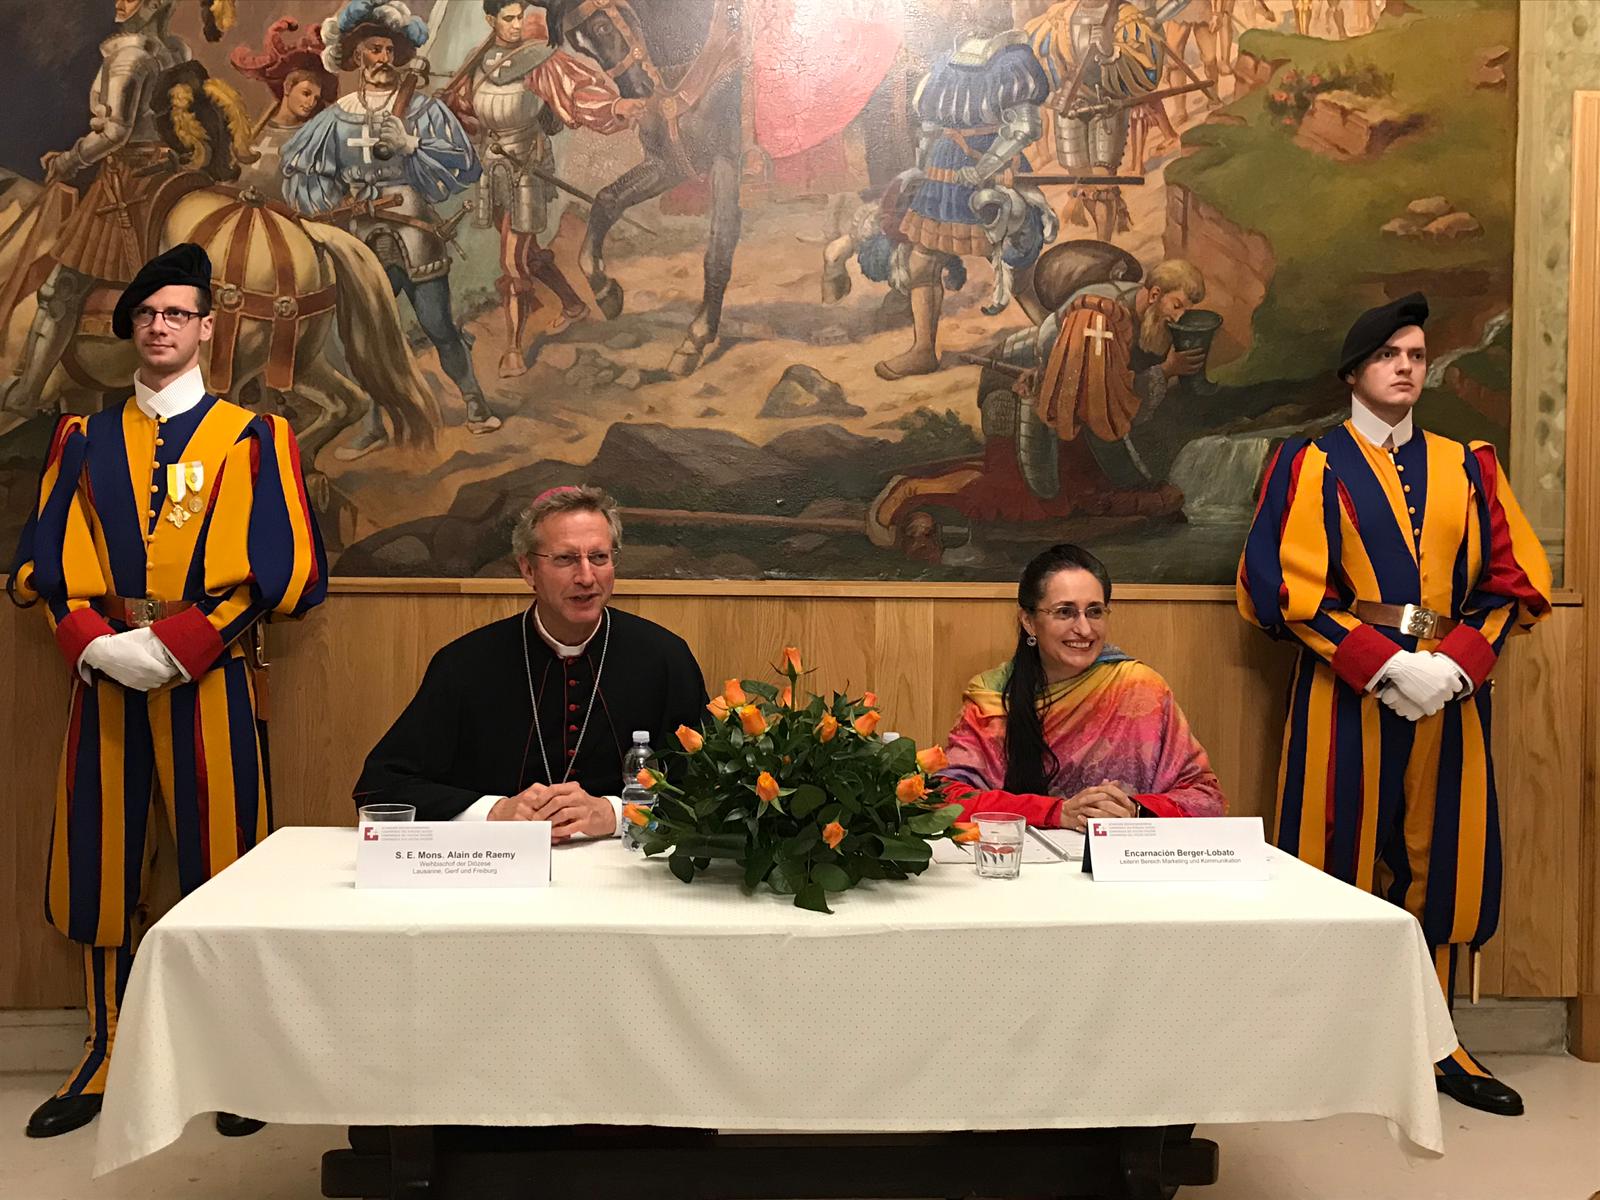 Il vescovo svizzero De Raemy introdotto dalla responsabile del settore marketing e comunicazione della CVS Encarnacion Berger Lobato, incontra i media elvetici al termine del Sinodo